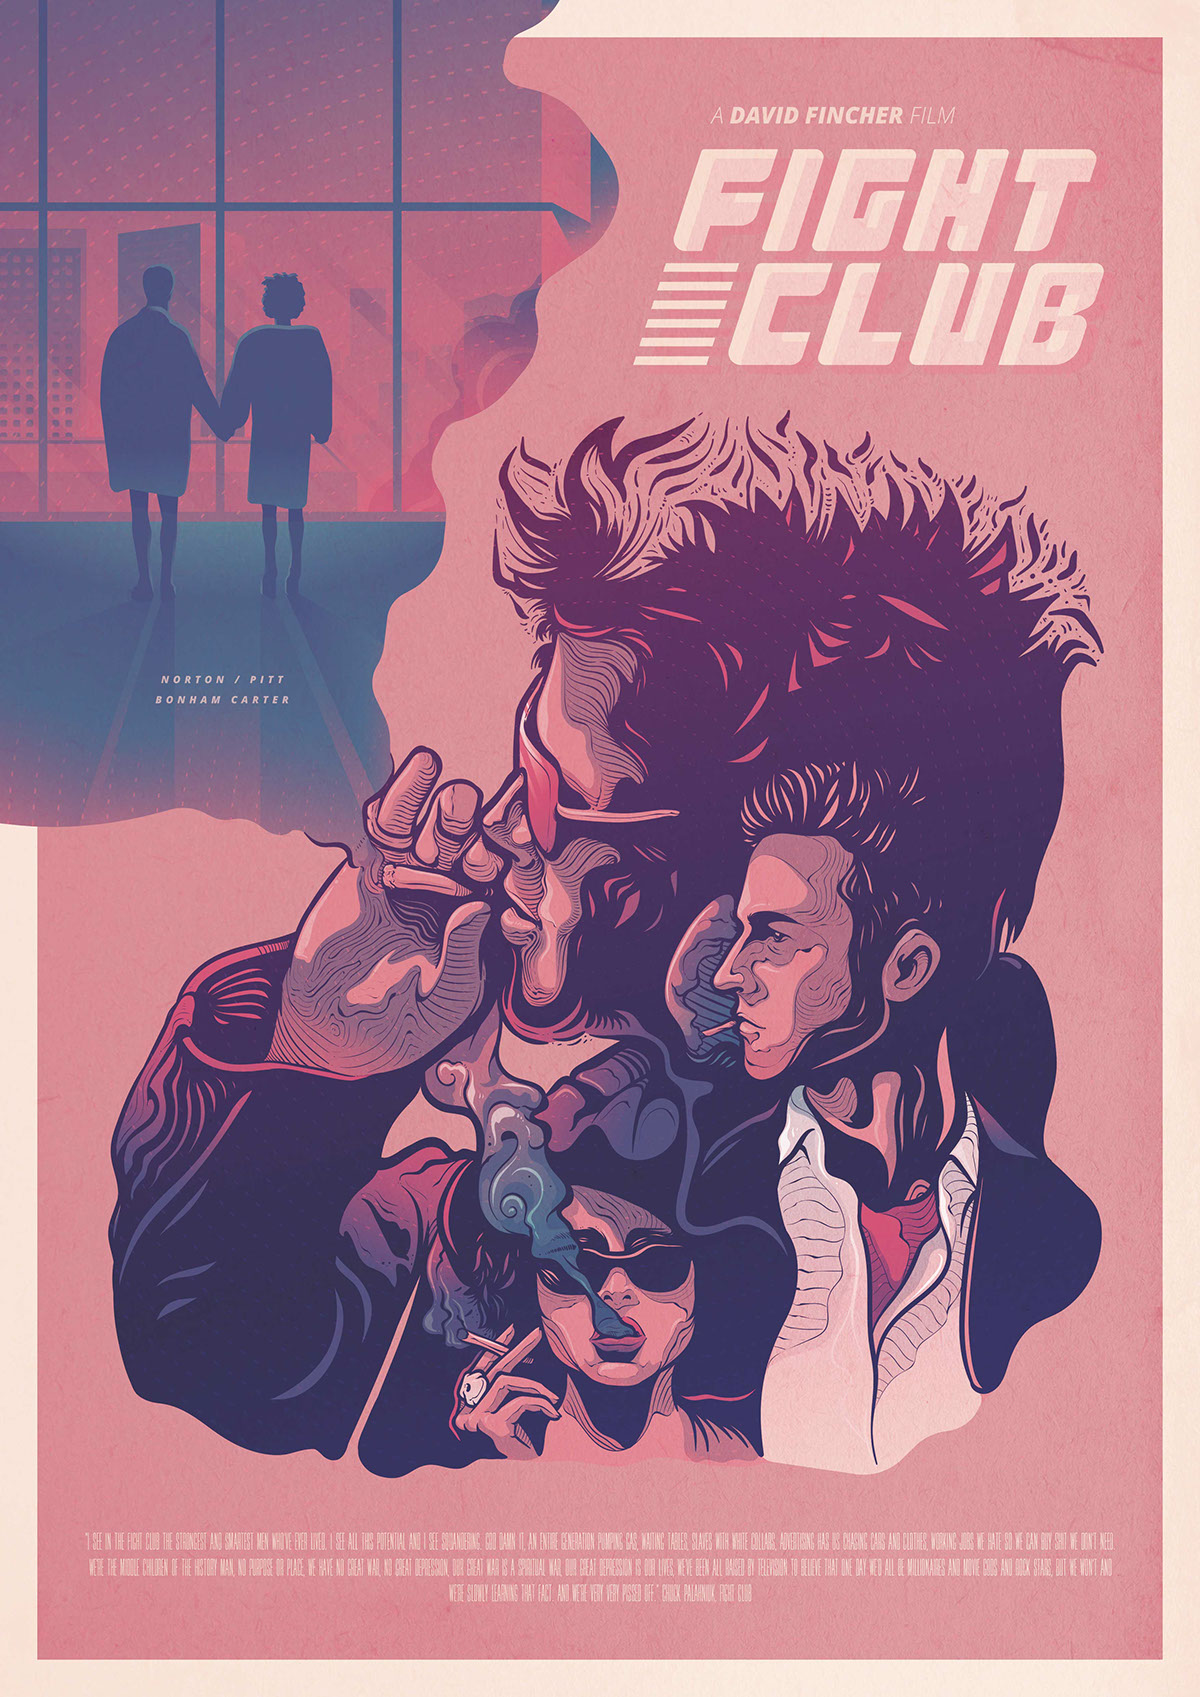 Fightclub fight club TYLERDURDEN Movies poster Retro